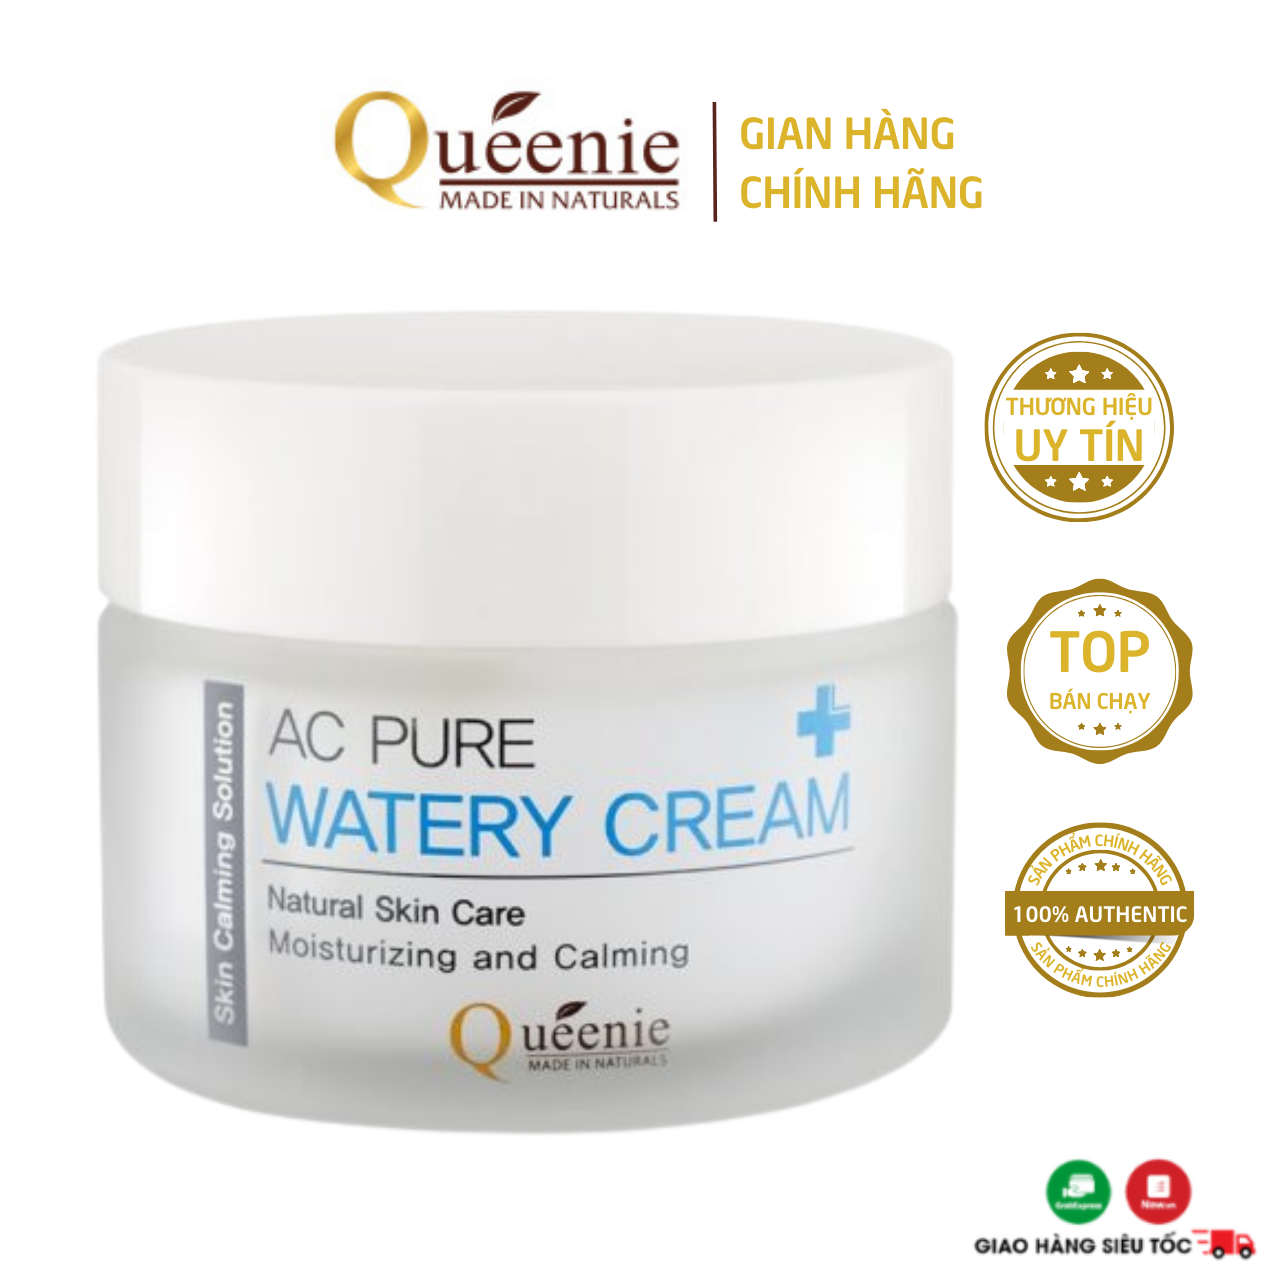 Kem dưỡng da Queenie AC Pure giàu dưỡng chất chống oxy hóa - Mỹ phẩm Hàn Quốc